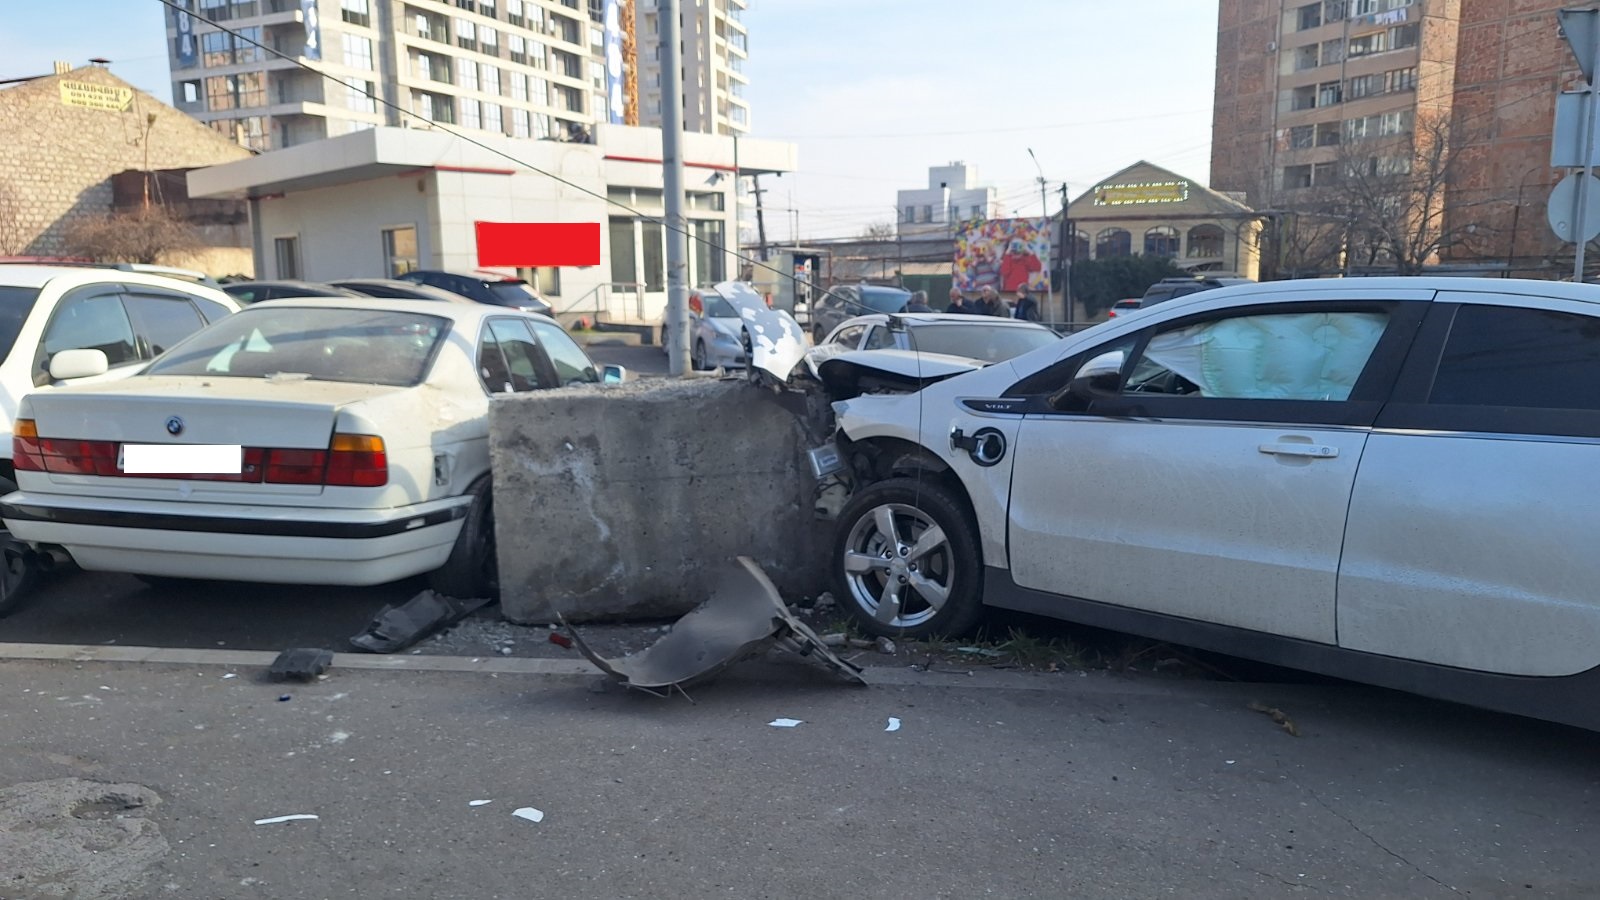 Ռուբինյանց փողոցում ավտոմեքենան բախվել է կայանած «BMW», «Opel» մակնիշների ավտոմեքենաներին և ճամփեզրի բետոնե սյանը, վարորդը հոսպիտալացվել է